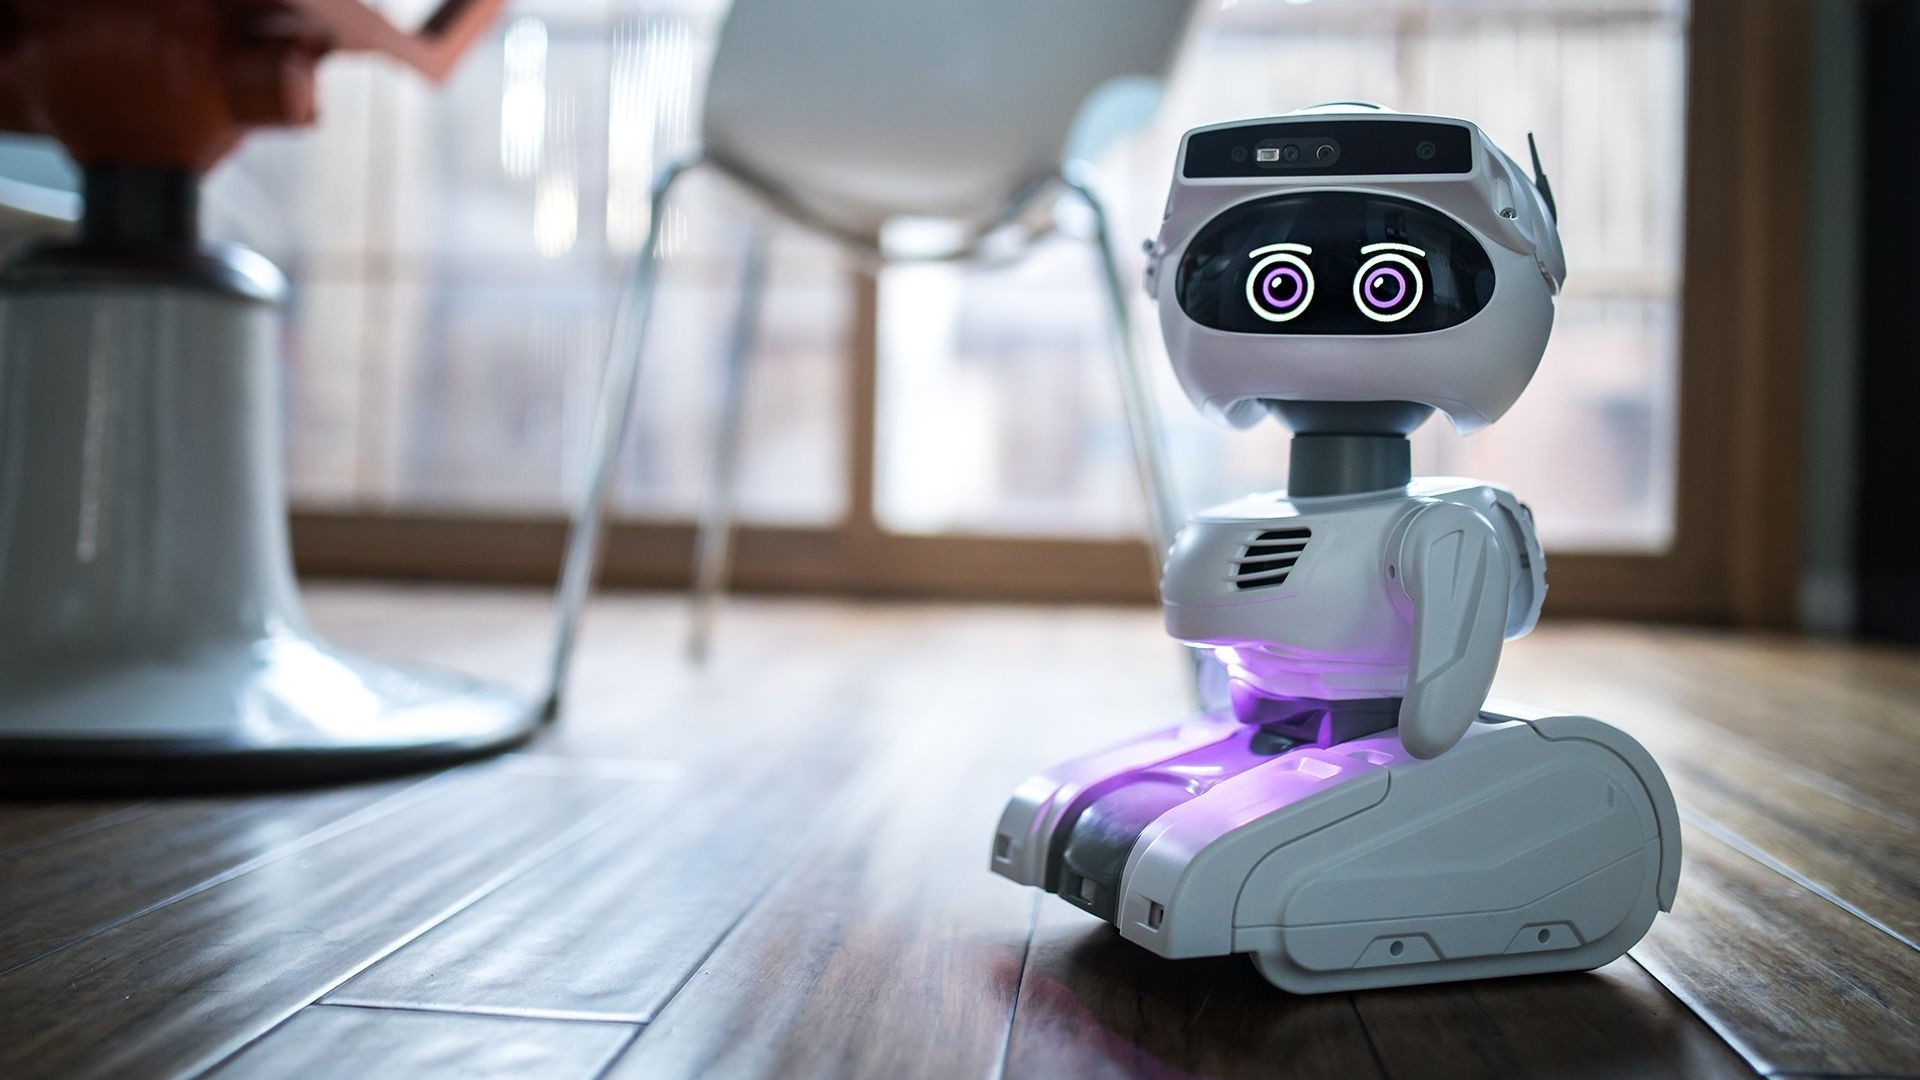 Optimista, el robot de escritorio que te hace compañía y funciona